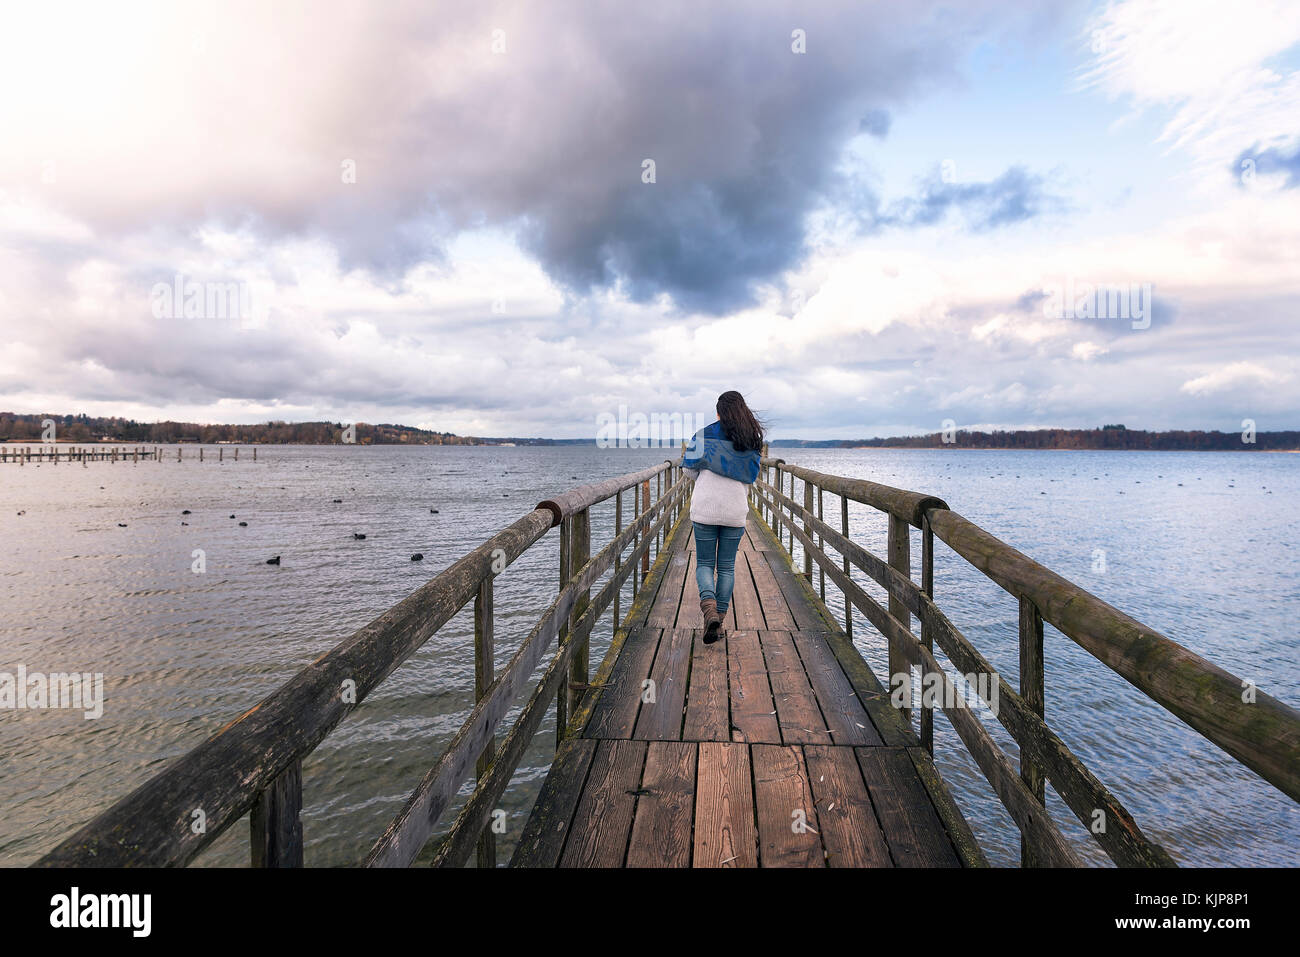 Giovane donna camminare da solo su un rustico ponte in legno sul lago Chiemsee, chiamato anche il mare bavarese, situato vicino a Rosenheim, Germania. Foto Stock